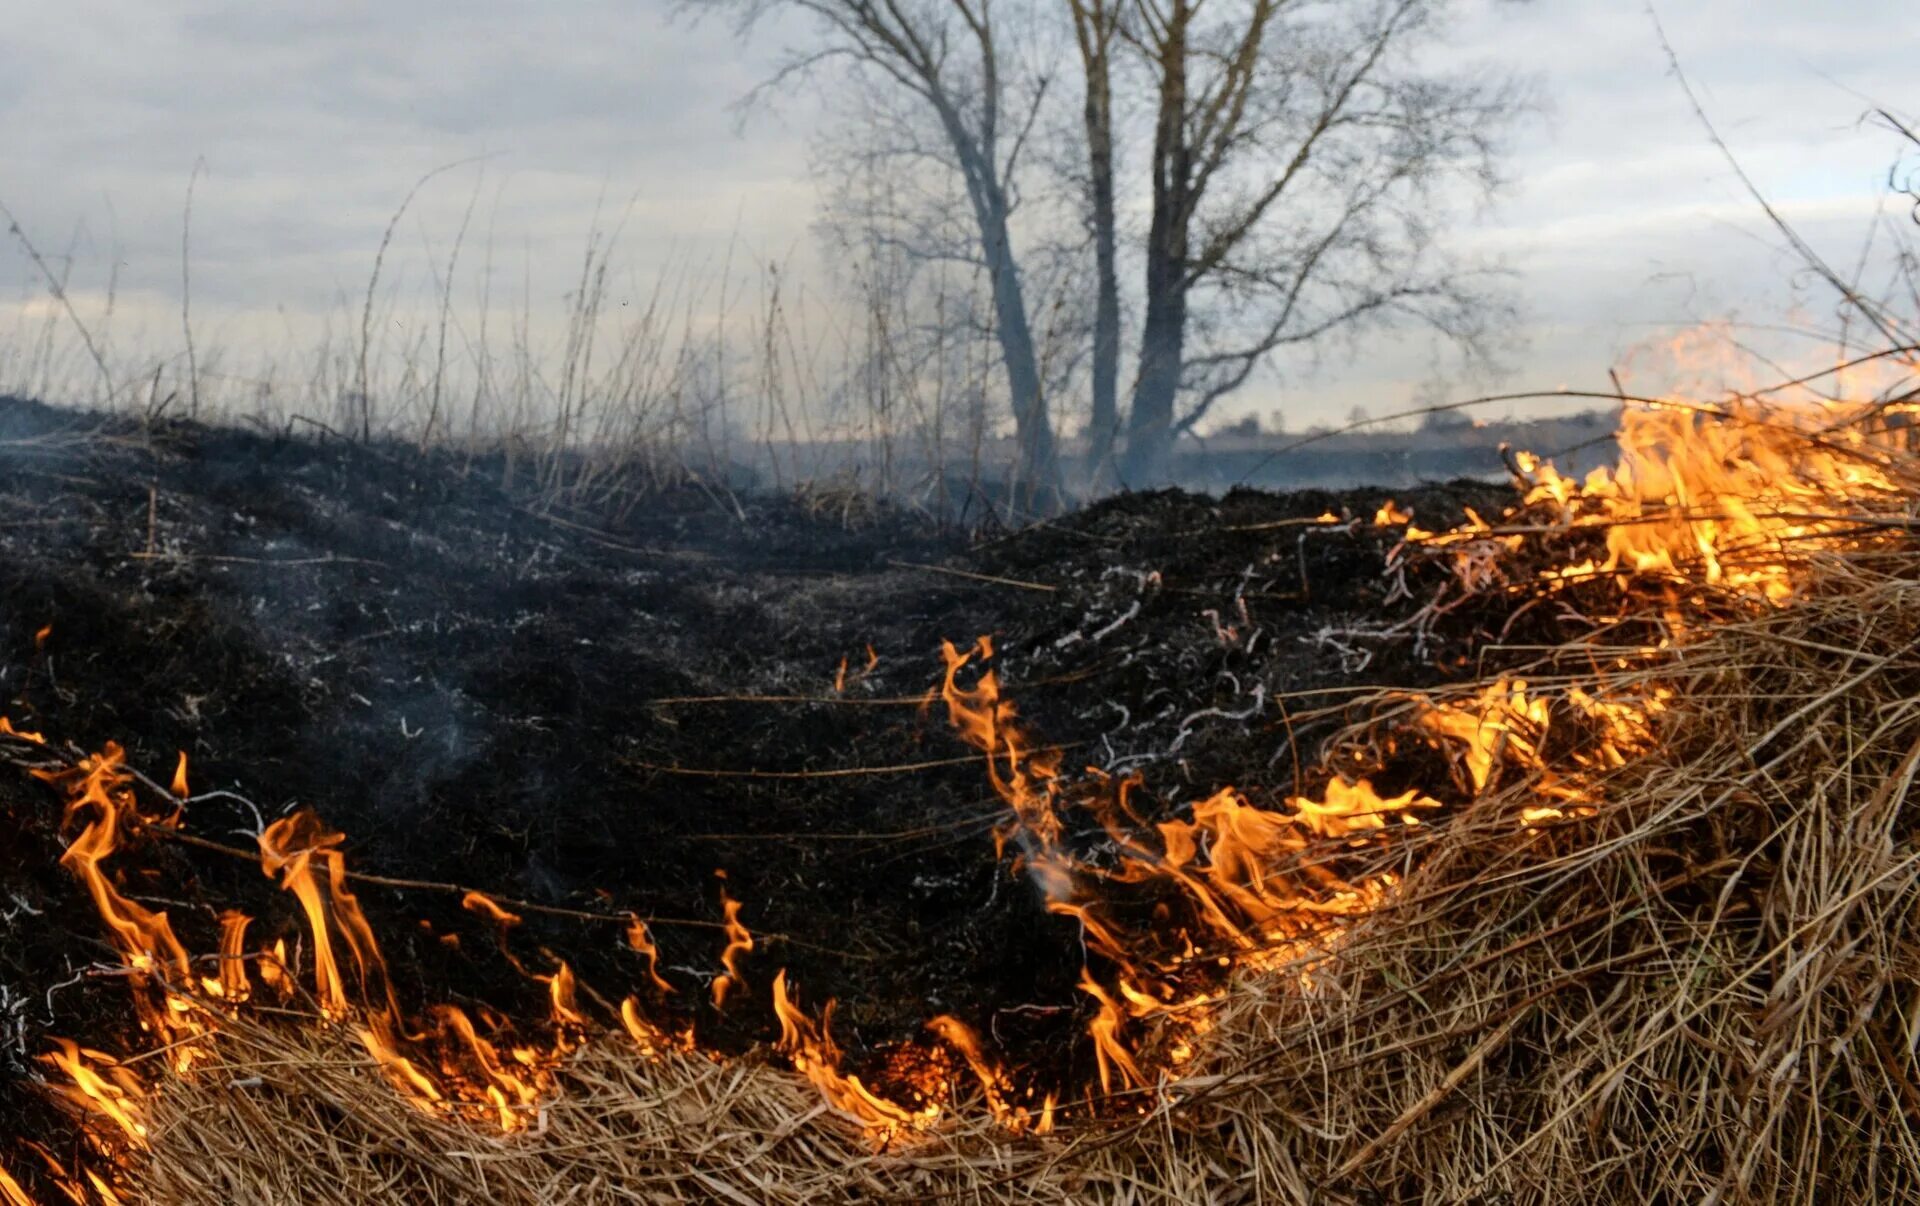 Поле после пожара. Лес после пожара. Выжженная земля после пожара. Пепелище после пожара в лесу. Горение гарь